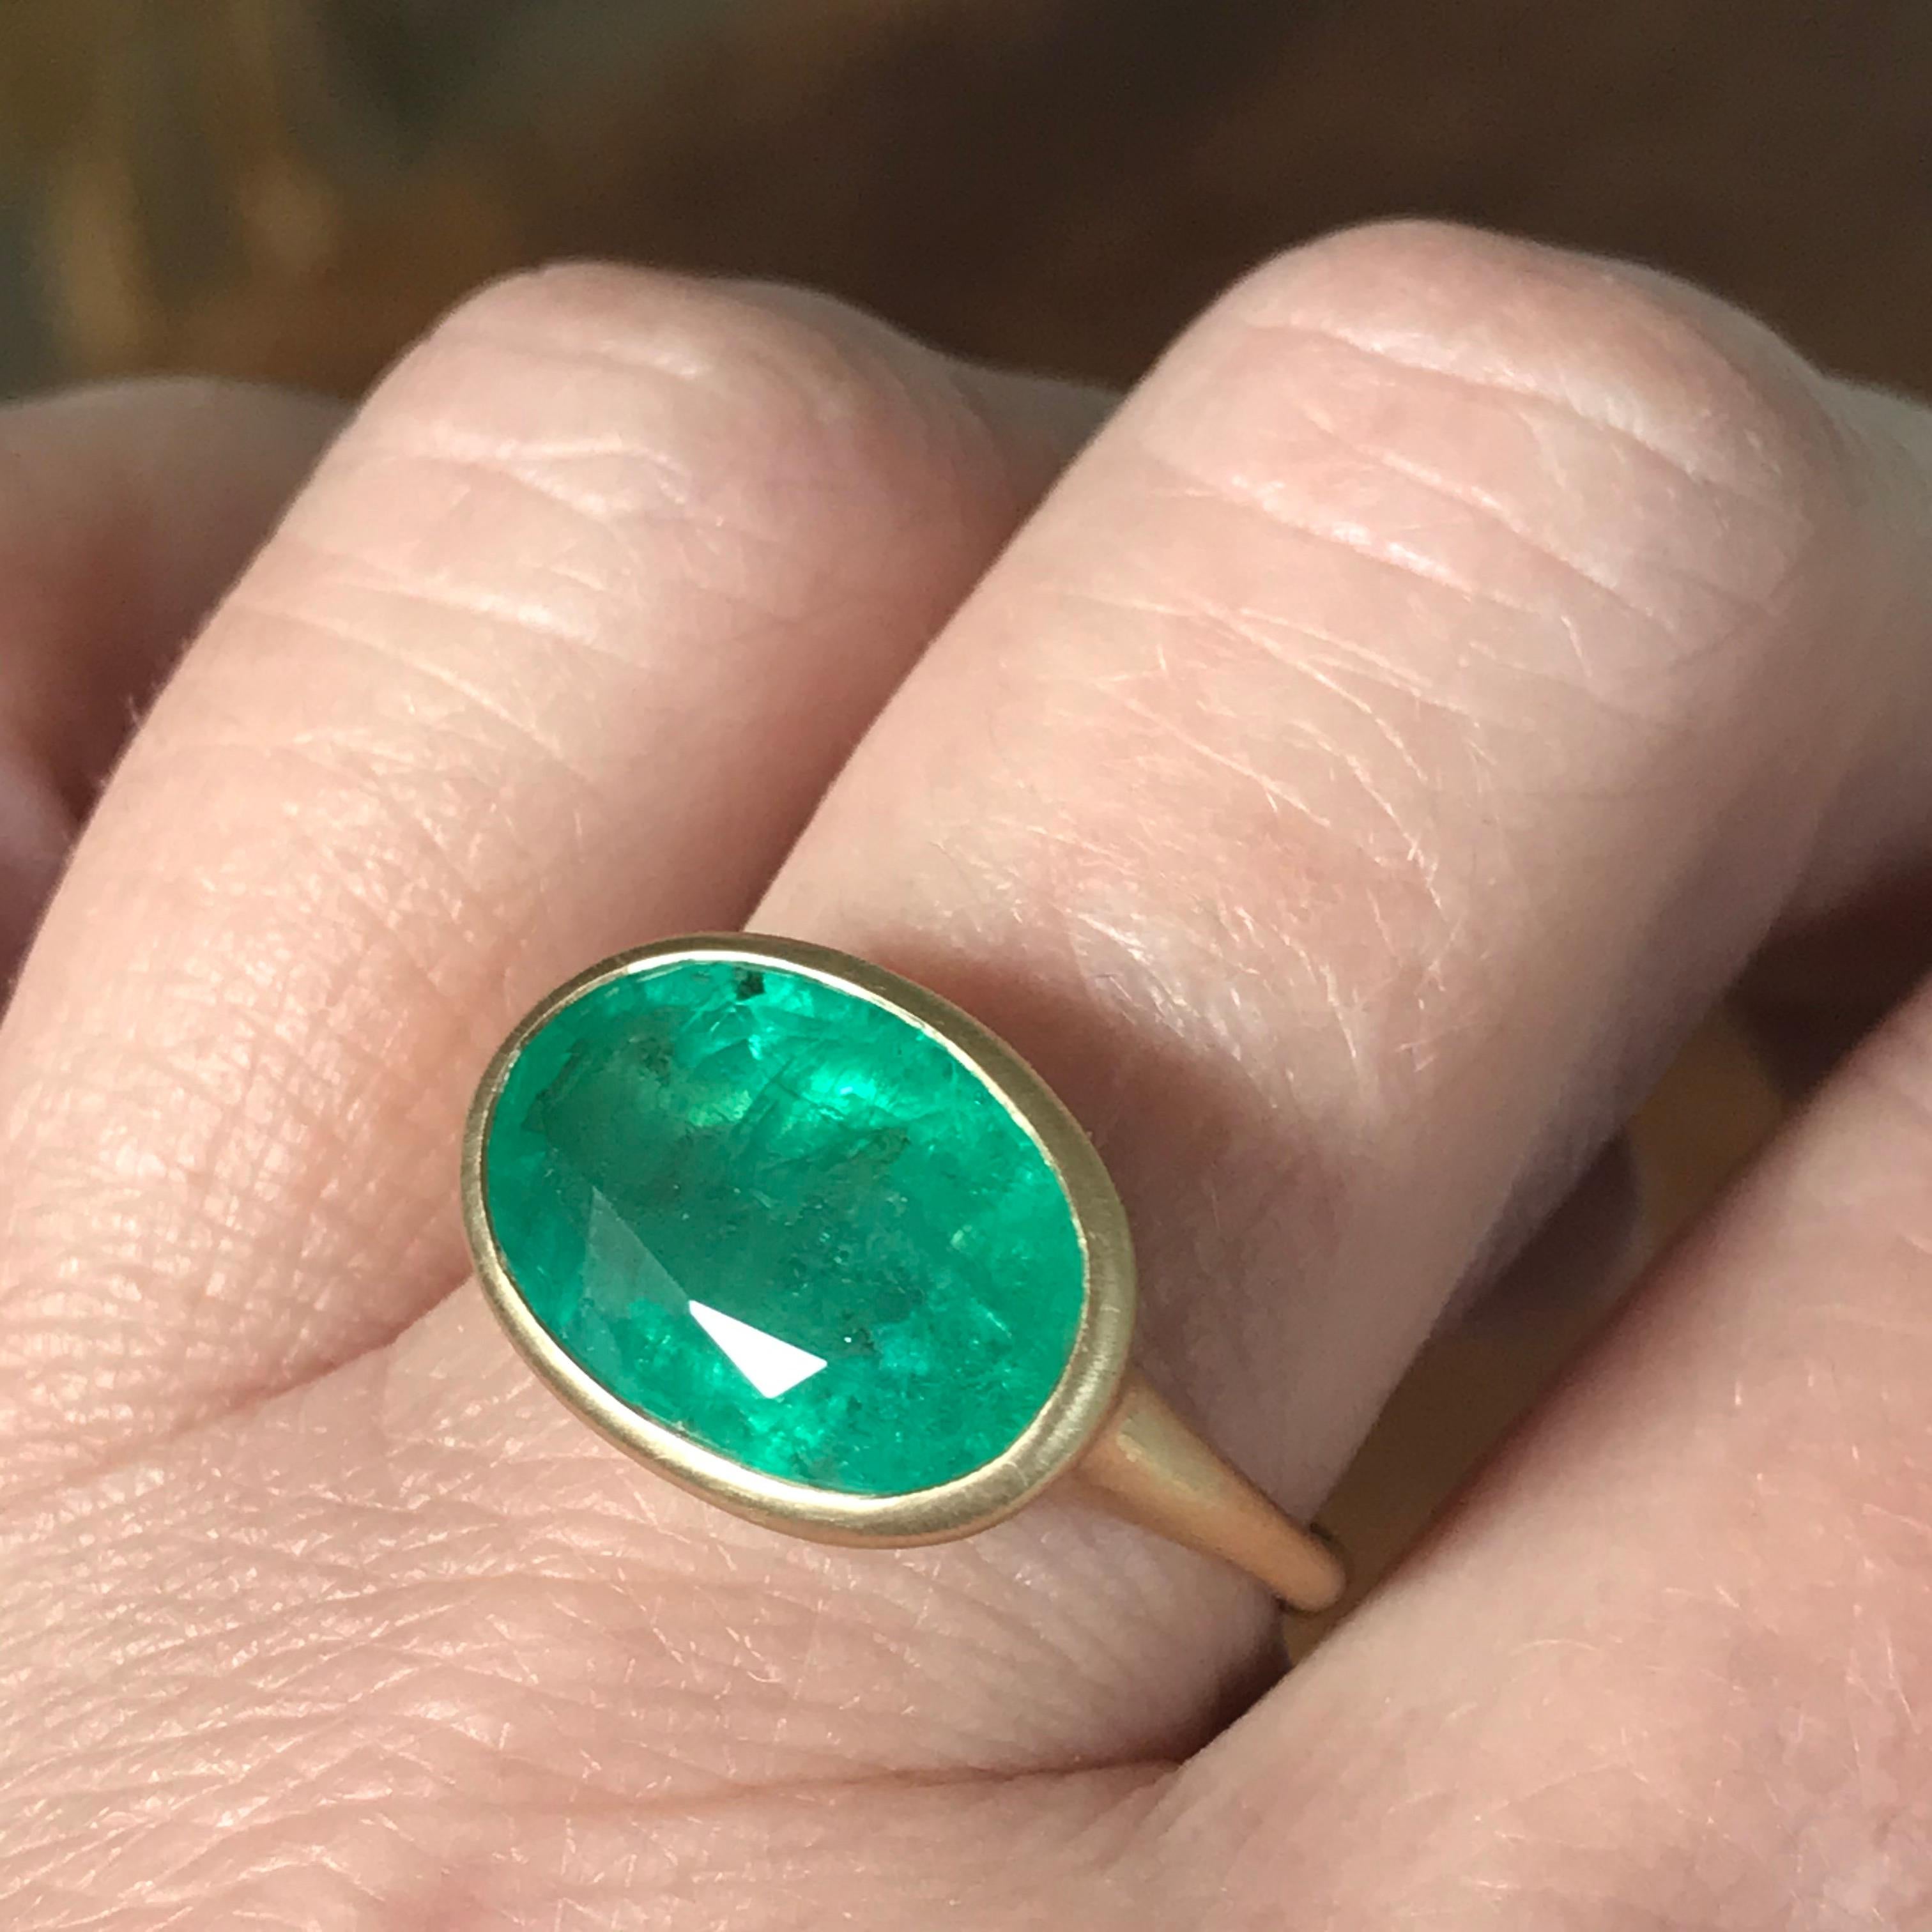 5.5 carat emerald